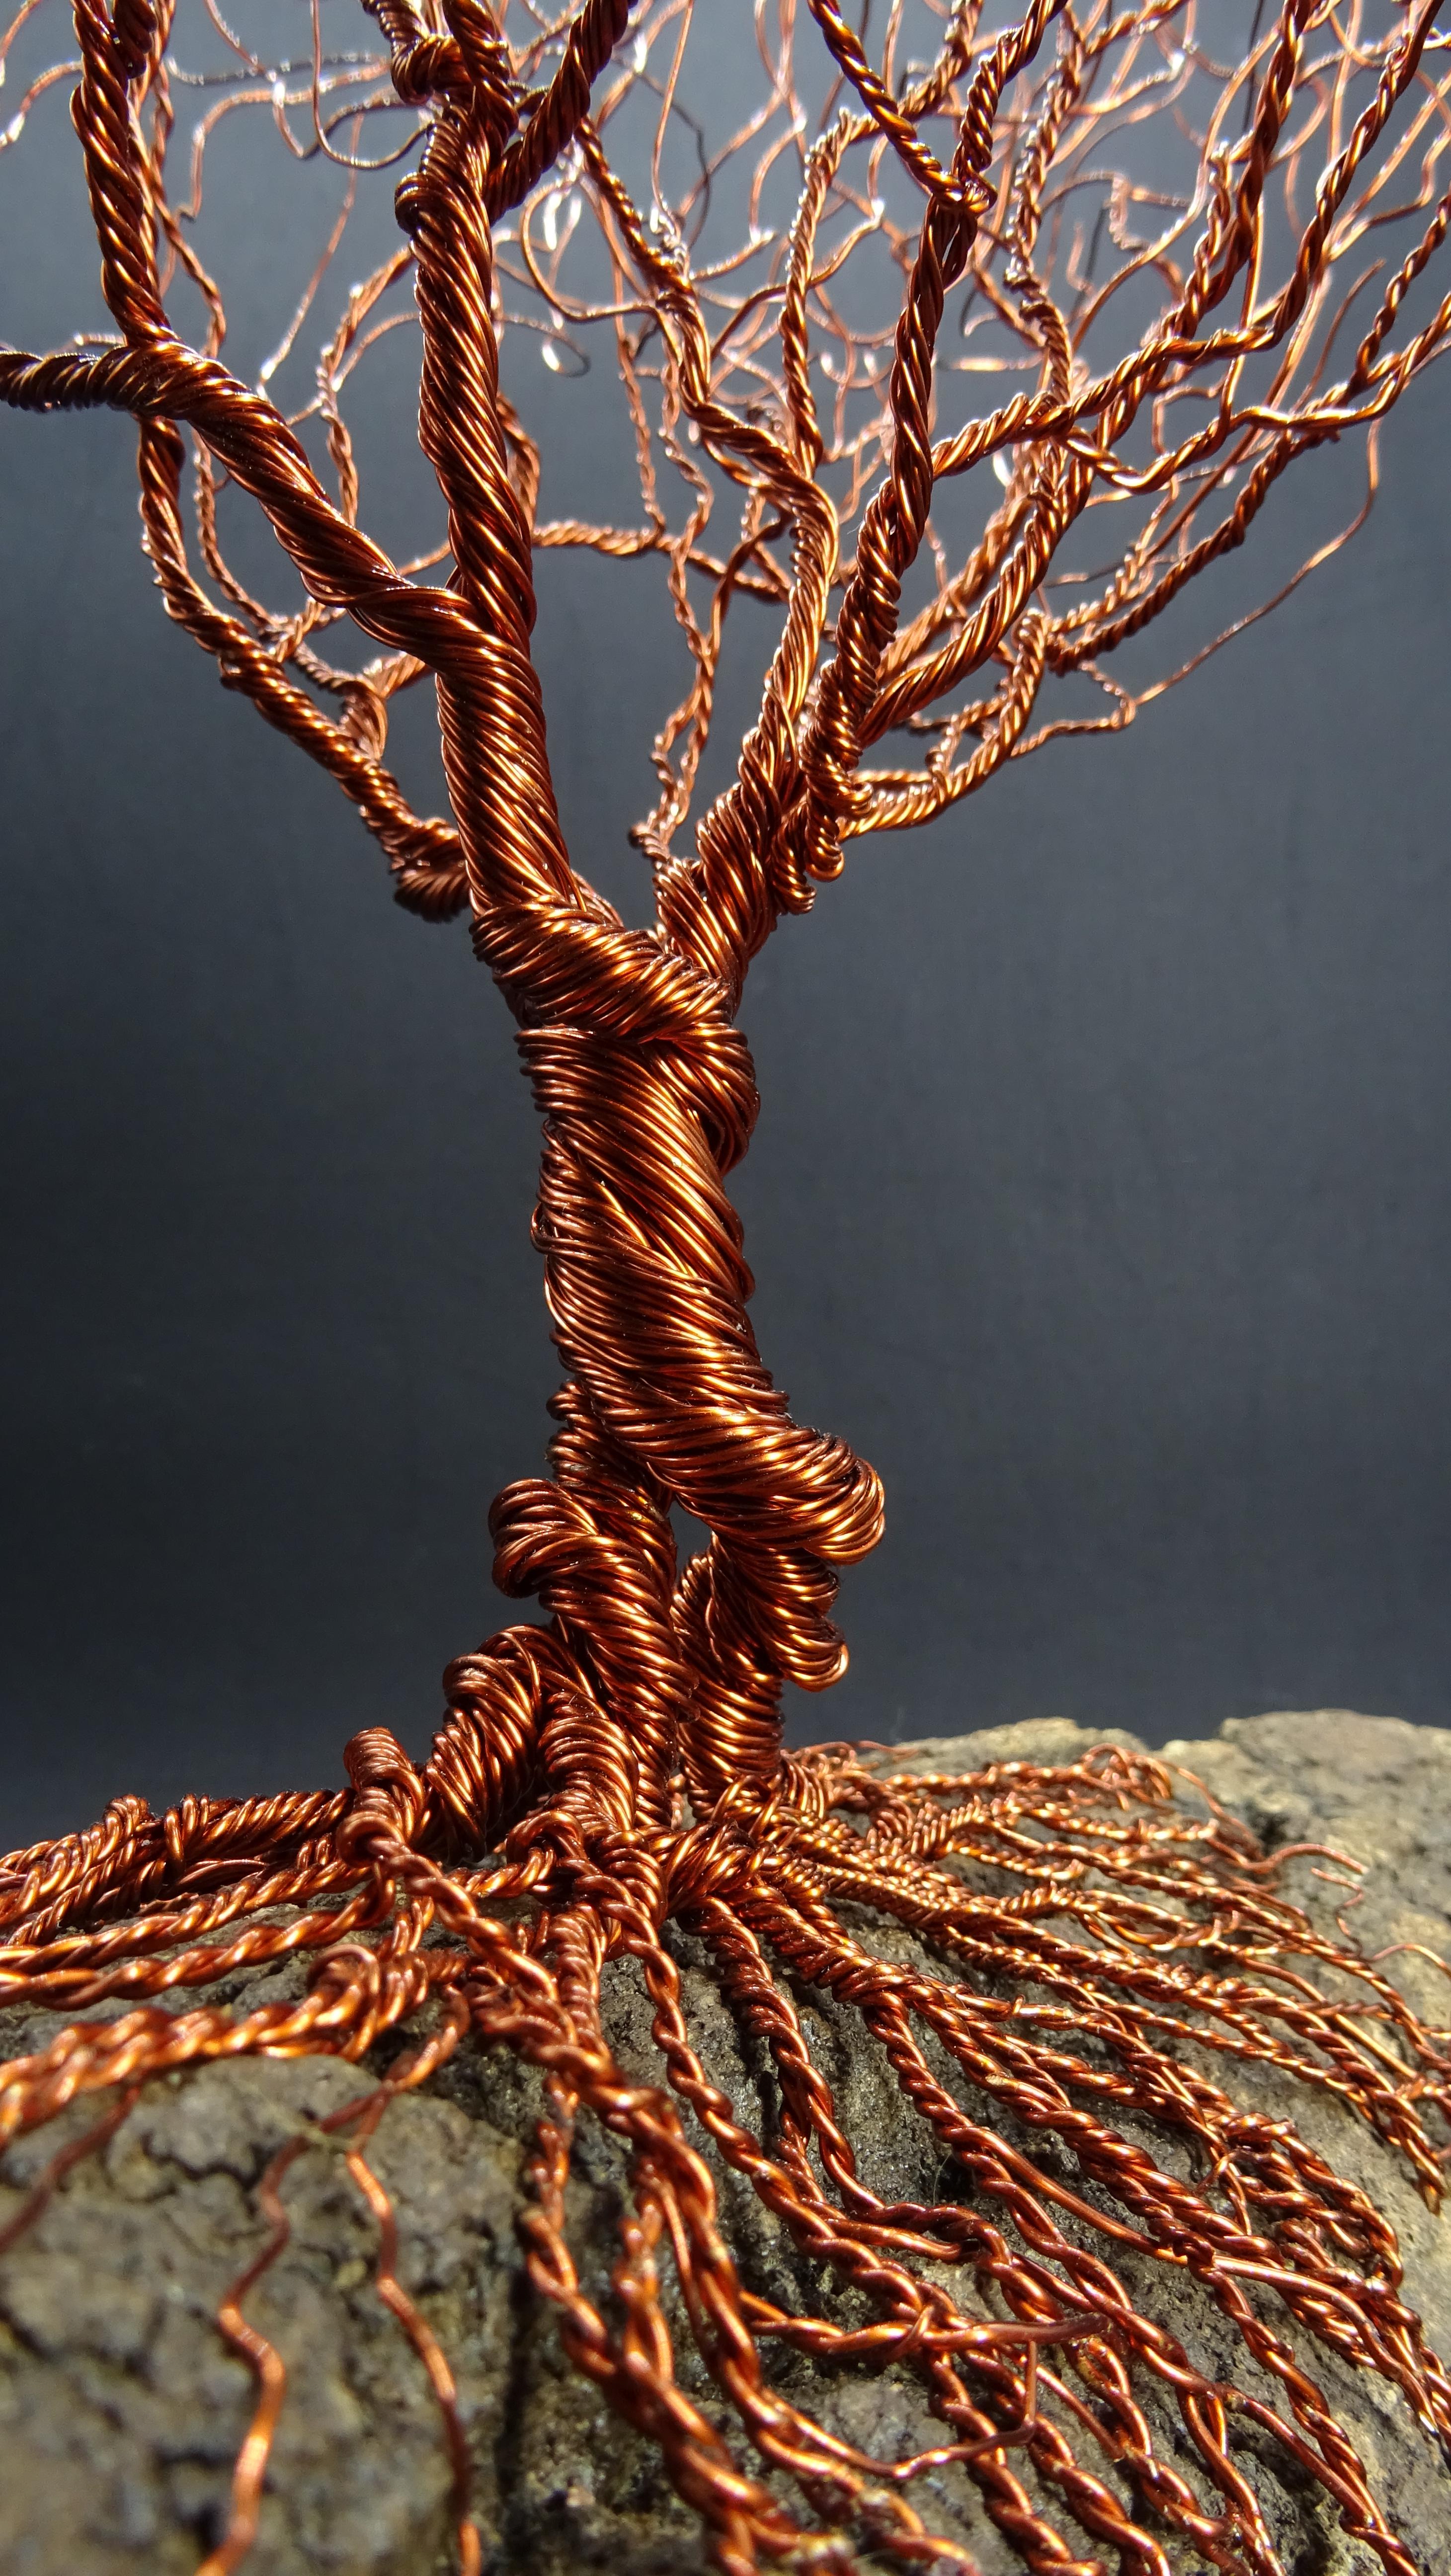 Le Bonsaï en cuivre épineux s'inspire des arbres déplacés par un vent fort.
Les matériaux sont le bois et les métaux, représentant à la fois la force de la vie et les racines de Mère Nature.
Les sculptures sont composées de fils qui